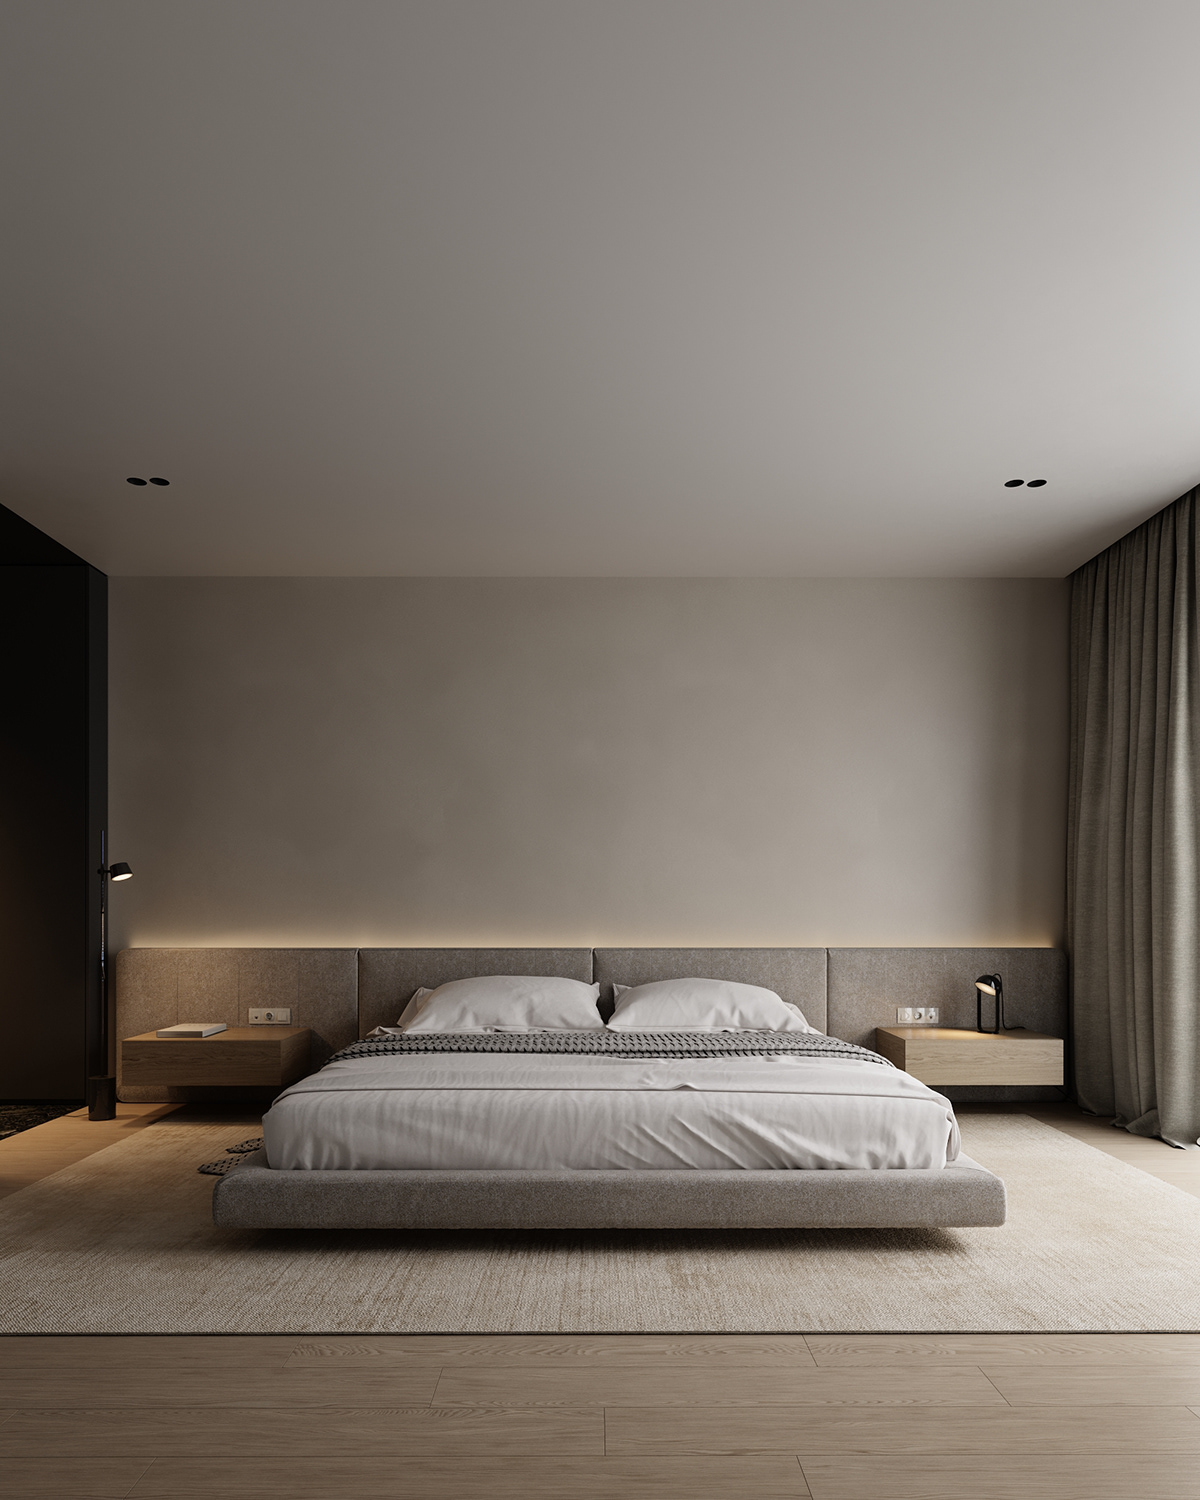 visualization Render interior design  3ds max corona bedroom winter Minimalism zen